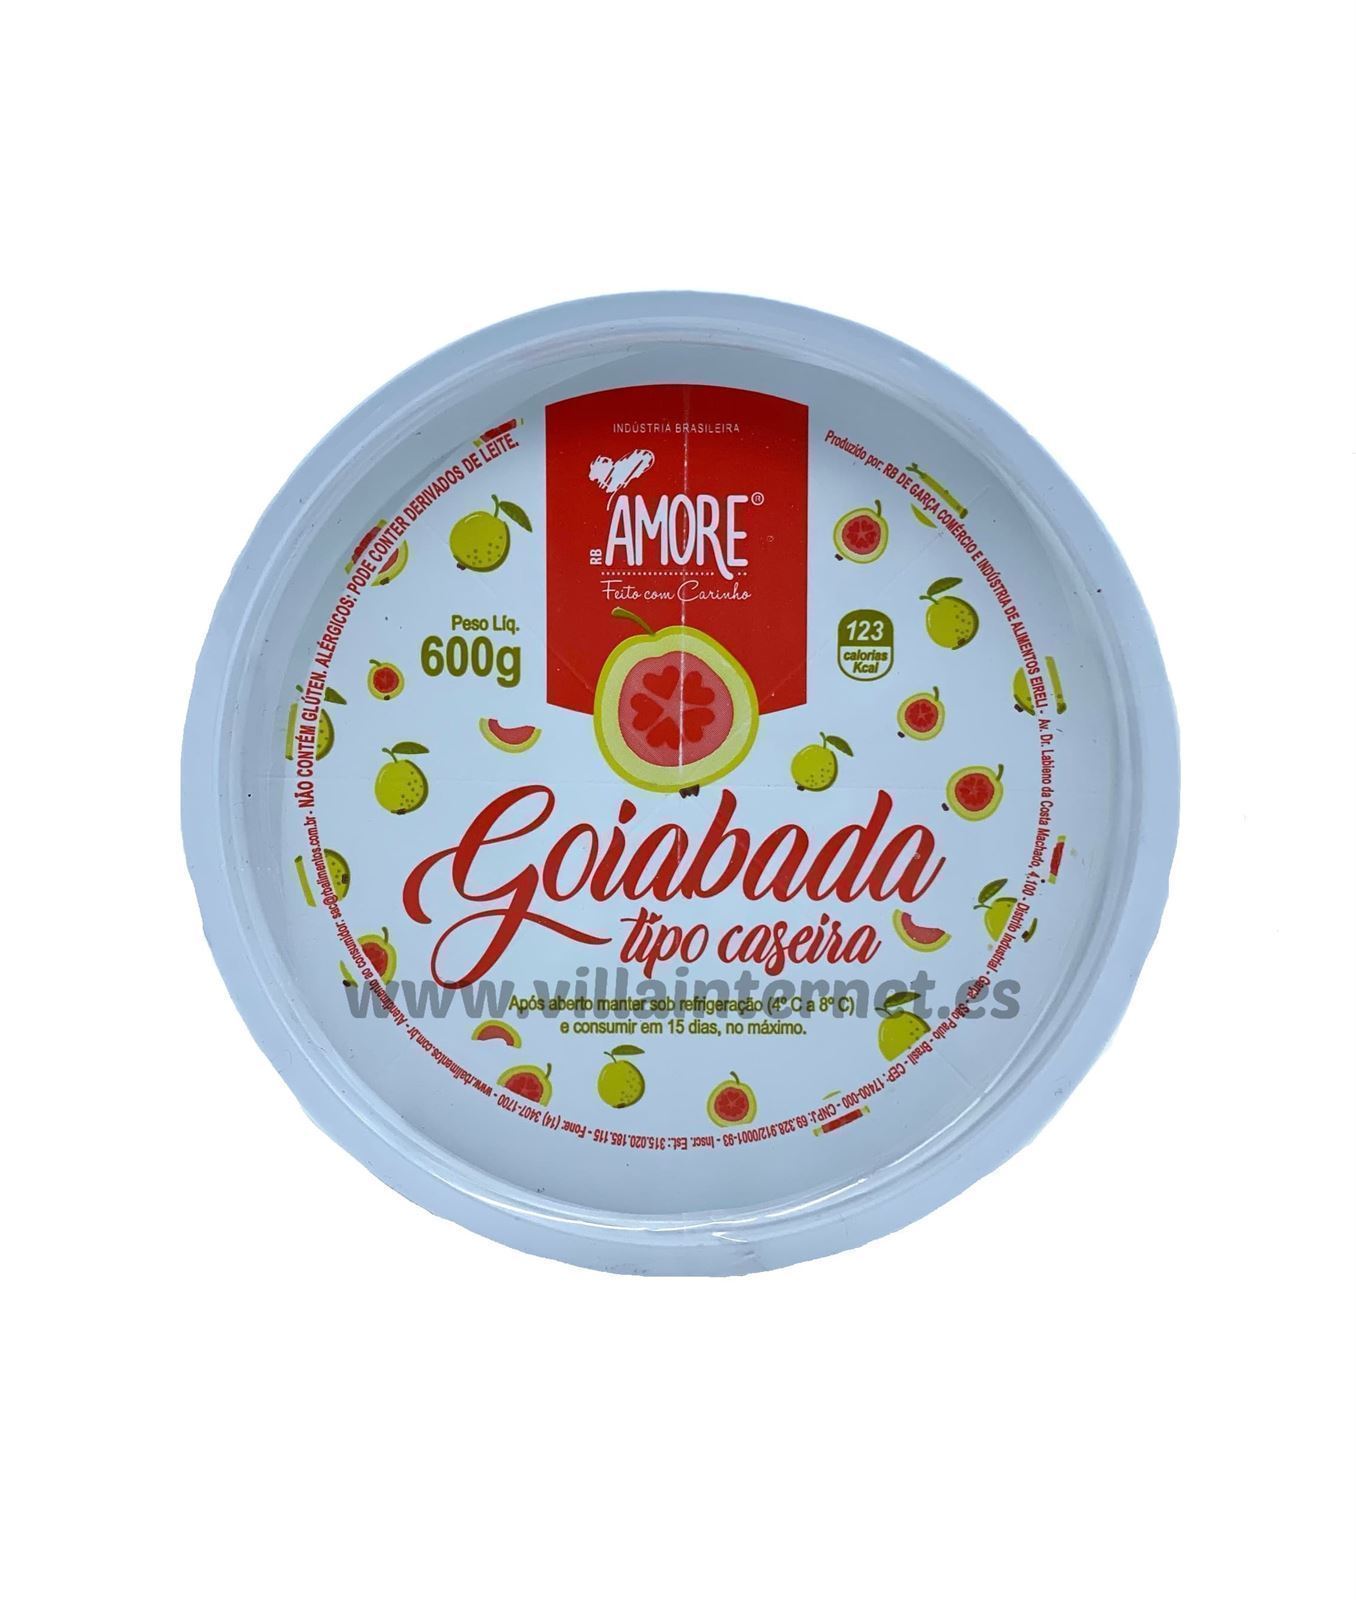 Pasta de guayaba Goiabada Amore 600g - Imagen 1